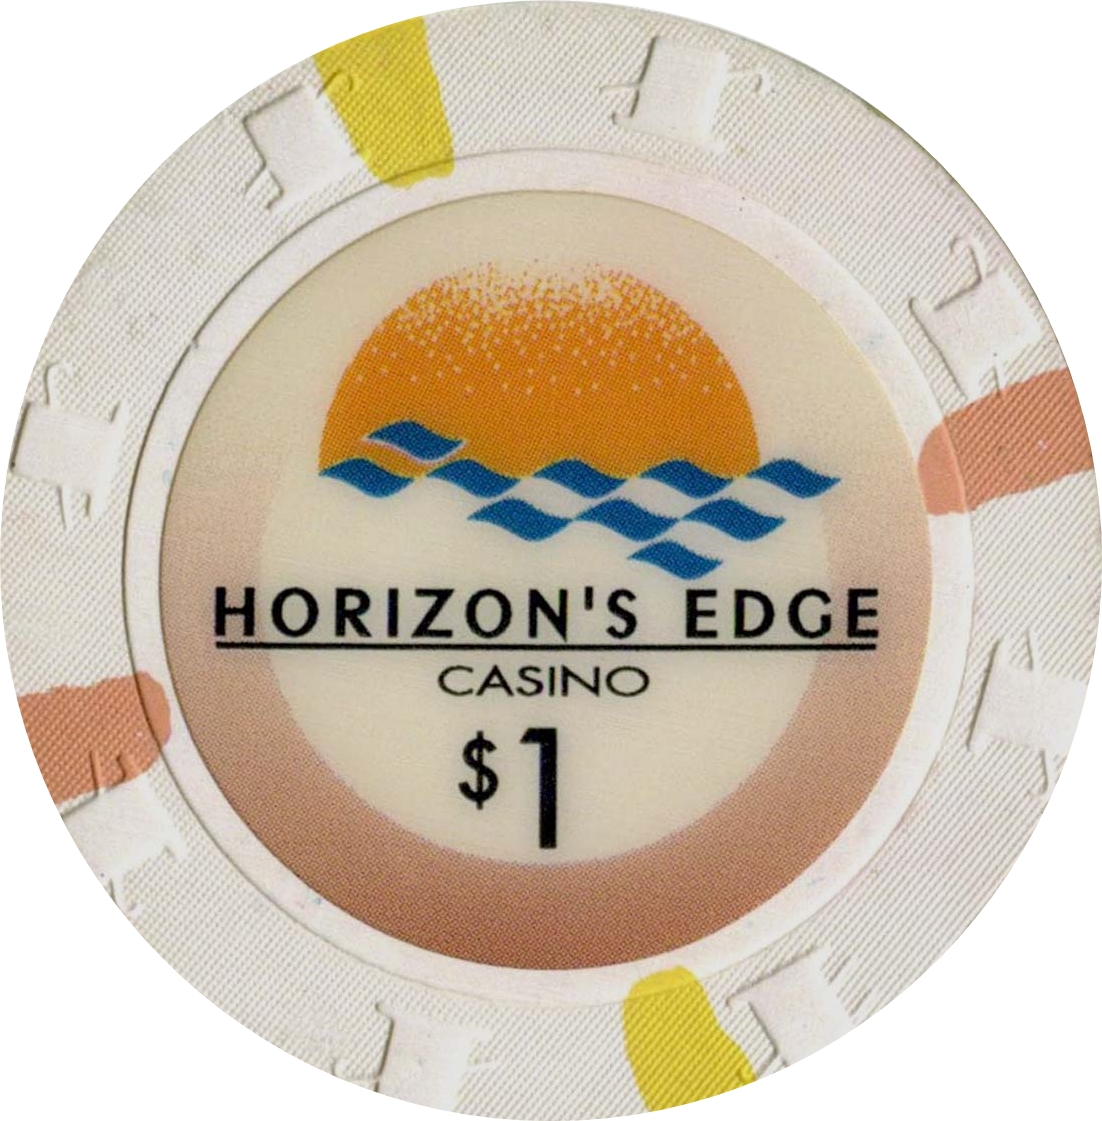 Casino chip edge reviews